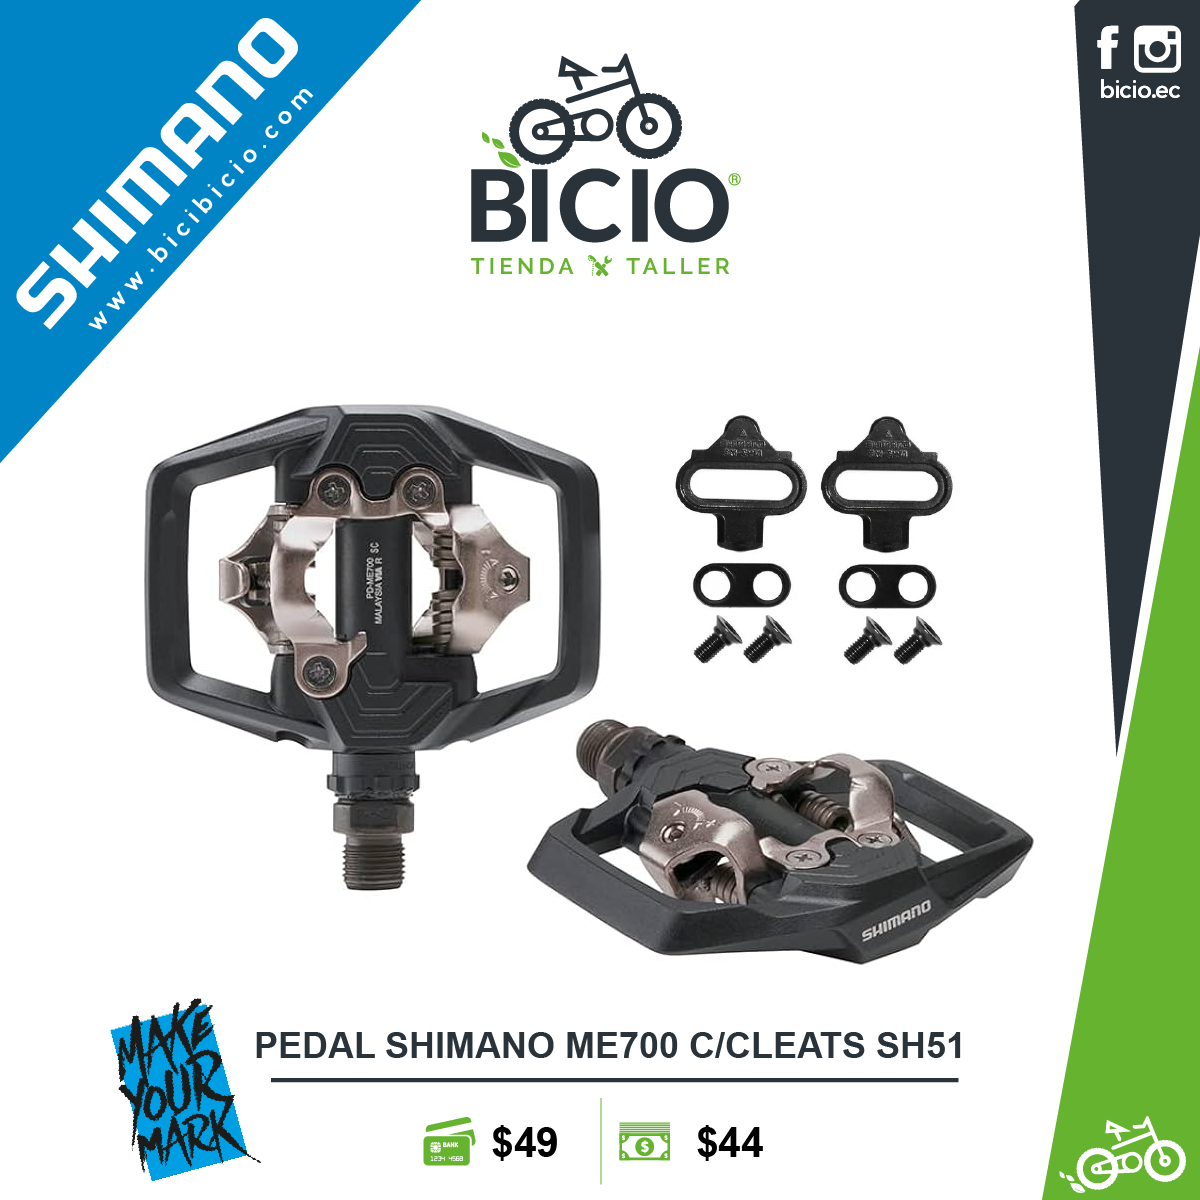 Pedales Shimano PD-ME700 - Bicio tienda - taller de bicicletas